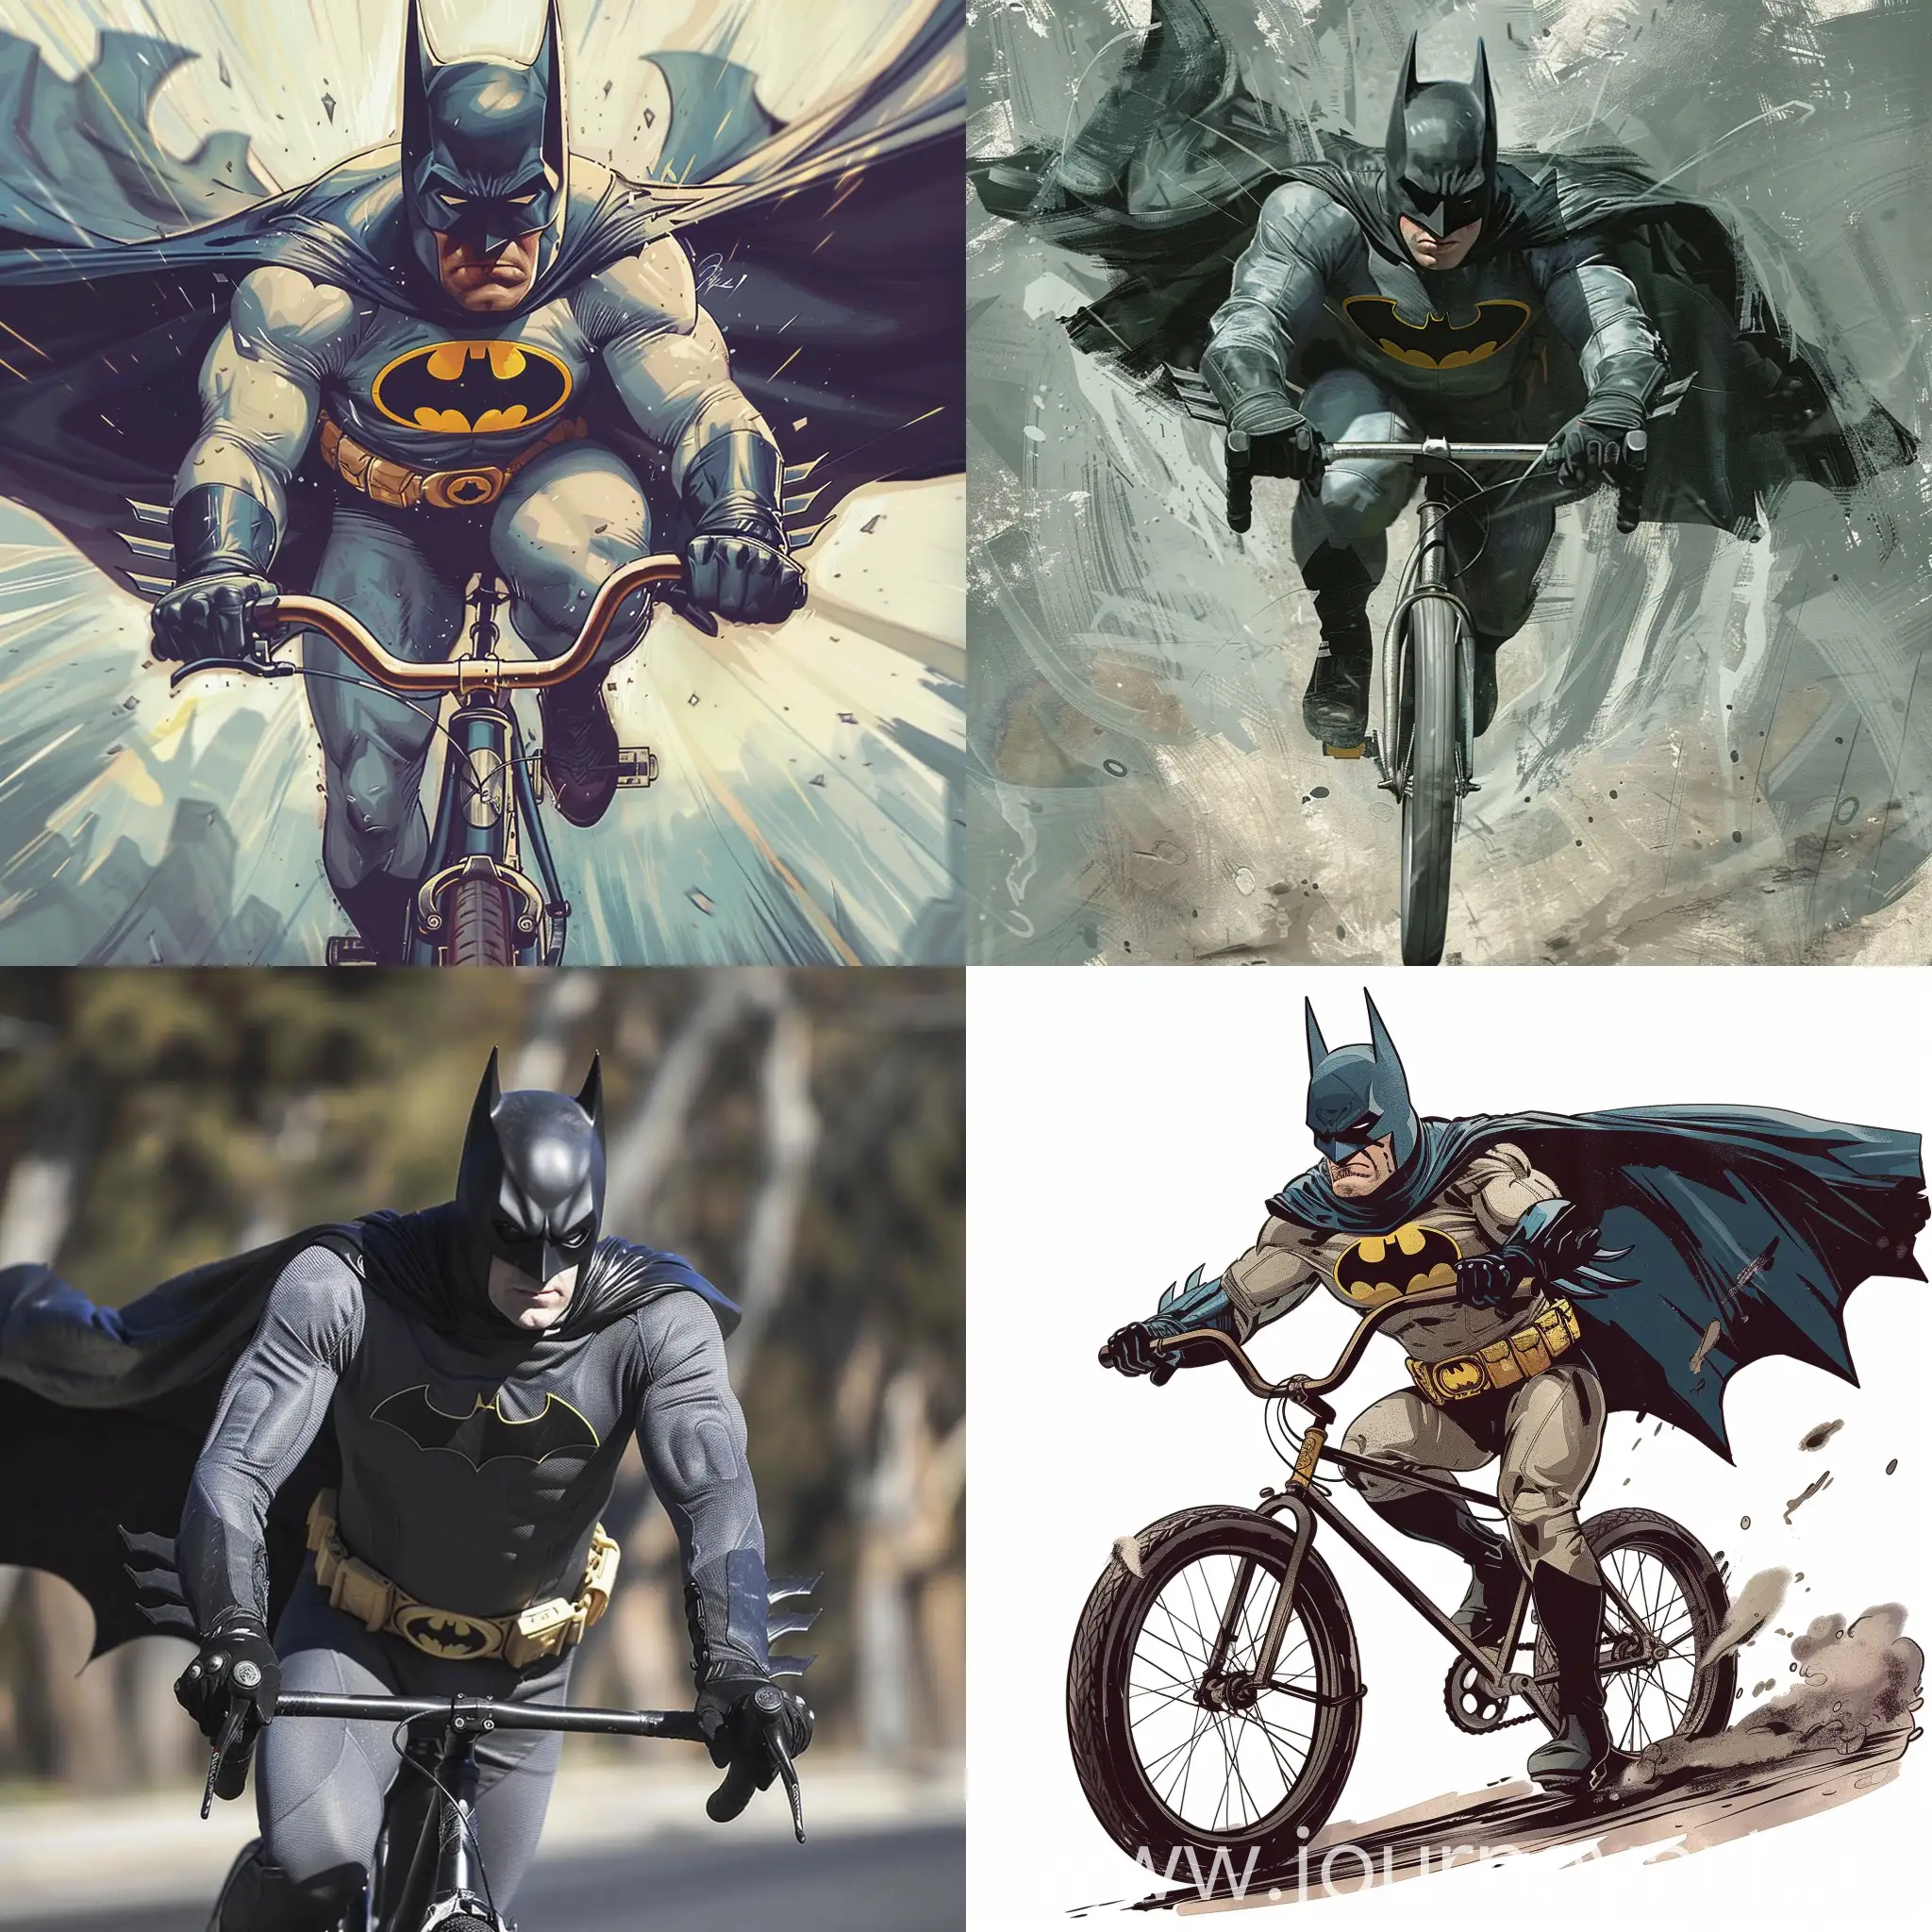  batman riding a bike
